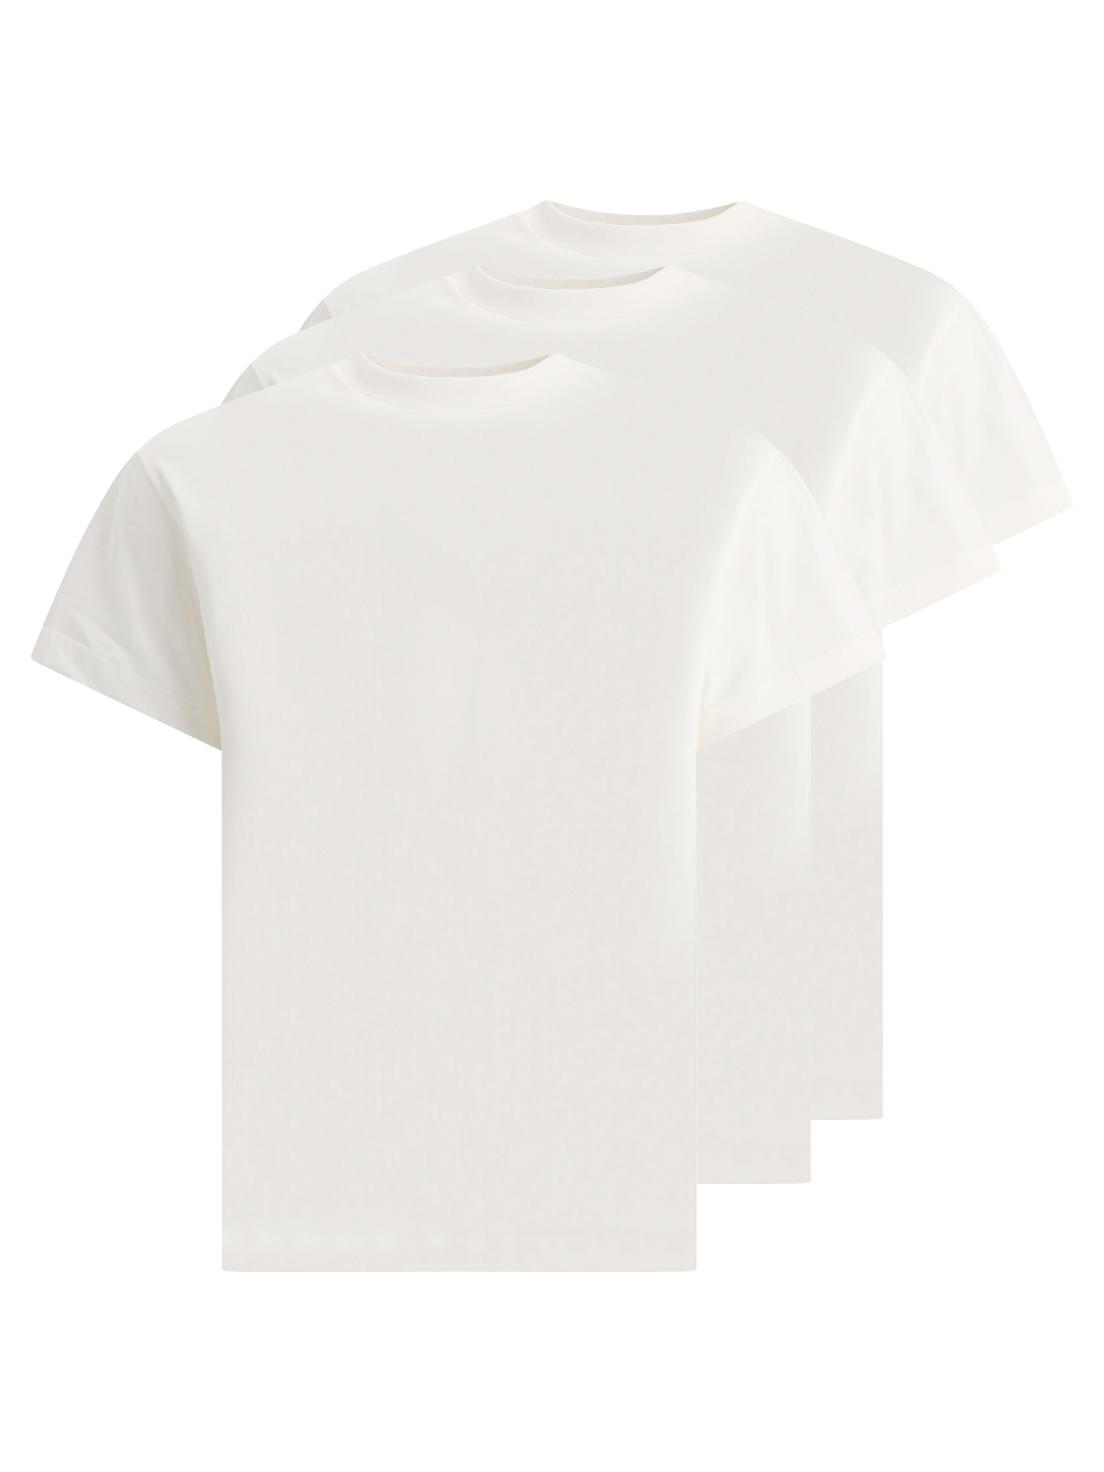 [해외직구 관부가세 포함] 질샌더 화이트 Set of three t셔츠s J47GC0001J45048100